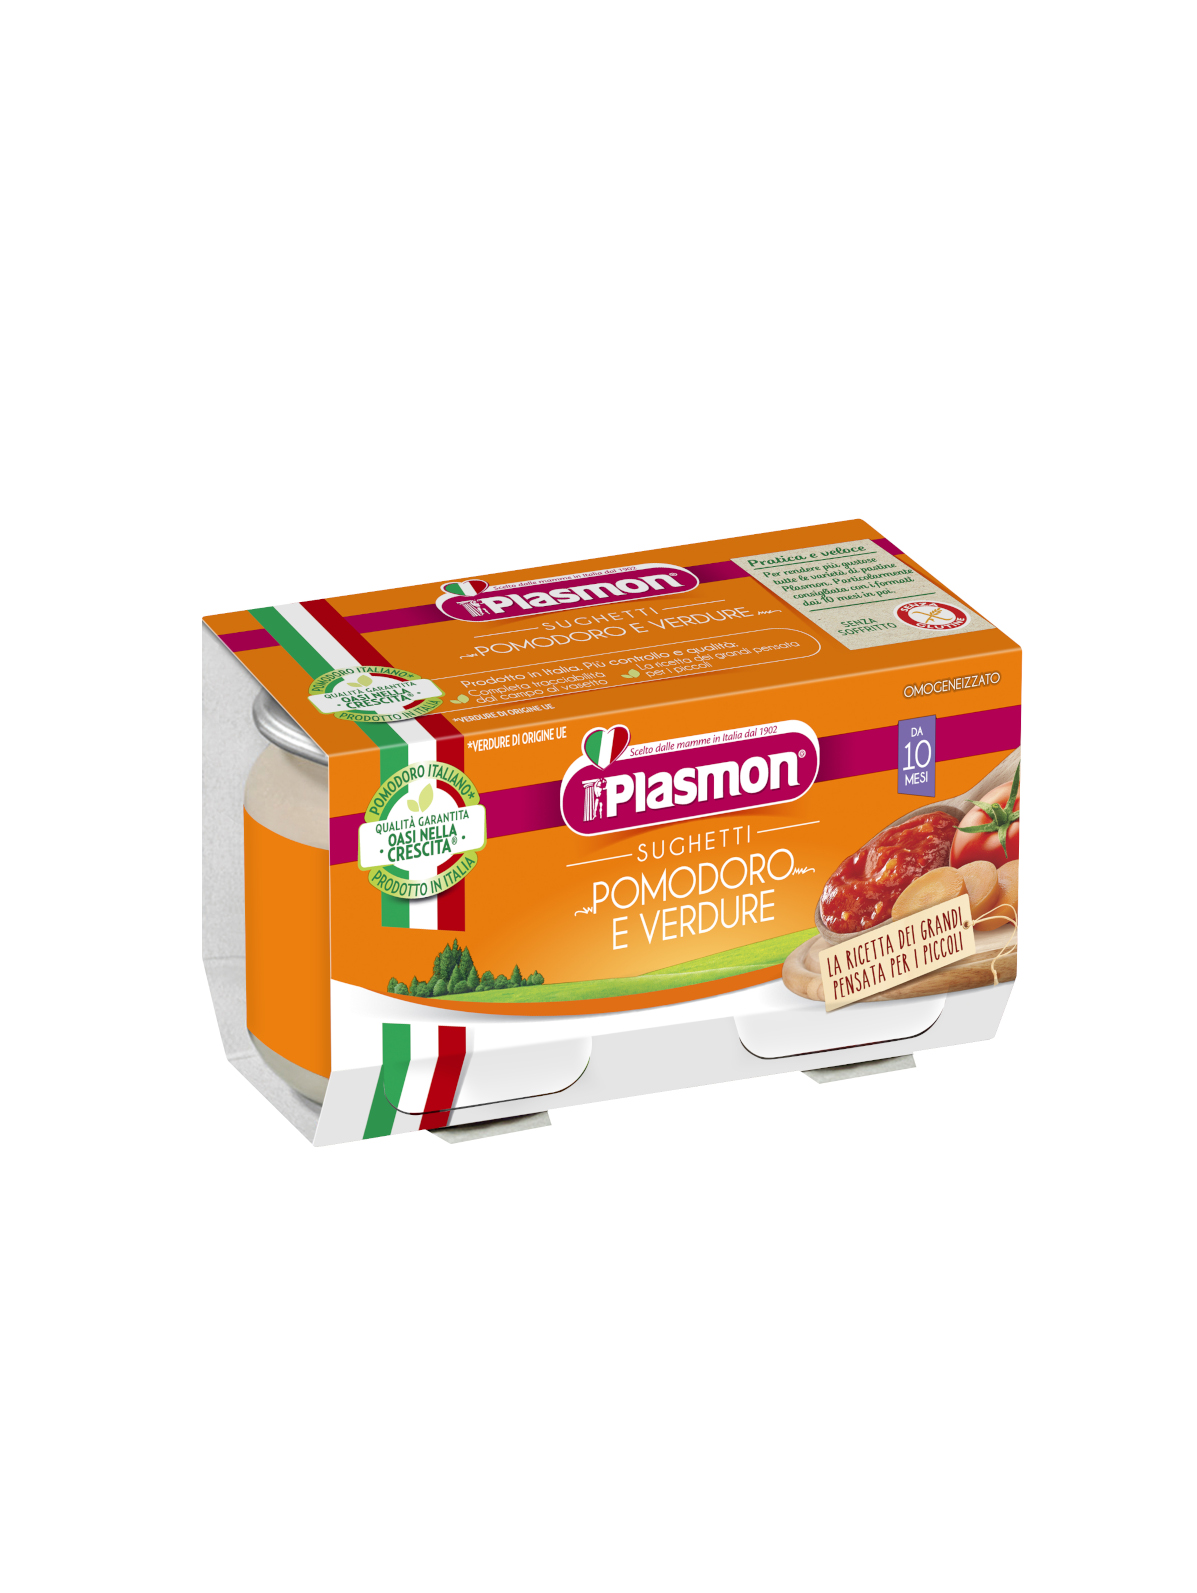 Plasmon - sughetto - pomodoro e verdure - 2x80g - PLASMON